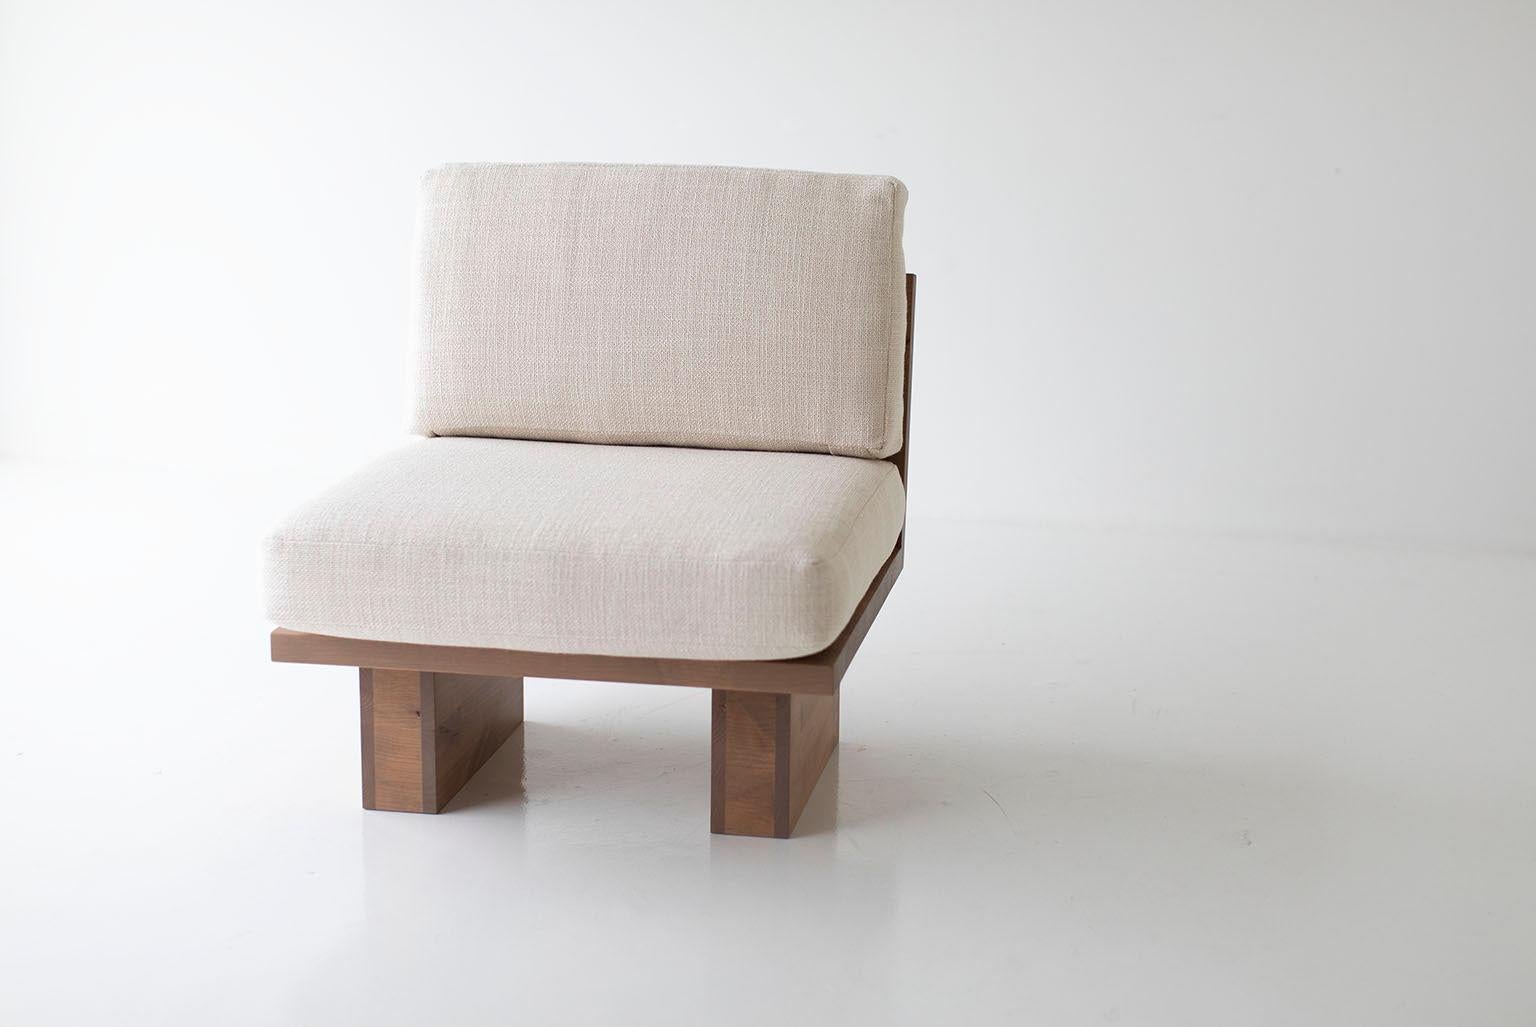 Dieser moderne Beistellstuhl von Suelo wurde in Ohio, USA, aus Massivholz gefertigt. Die Silhouette des Loungesessels ist einfach, modern und schlank, mit bequemen Rücken- und Sitzkissen. Dies ist der perfekte Stuhl für jeden Raum, ob drinnen oder